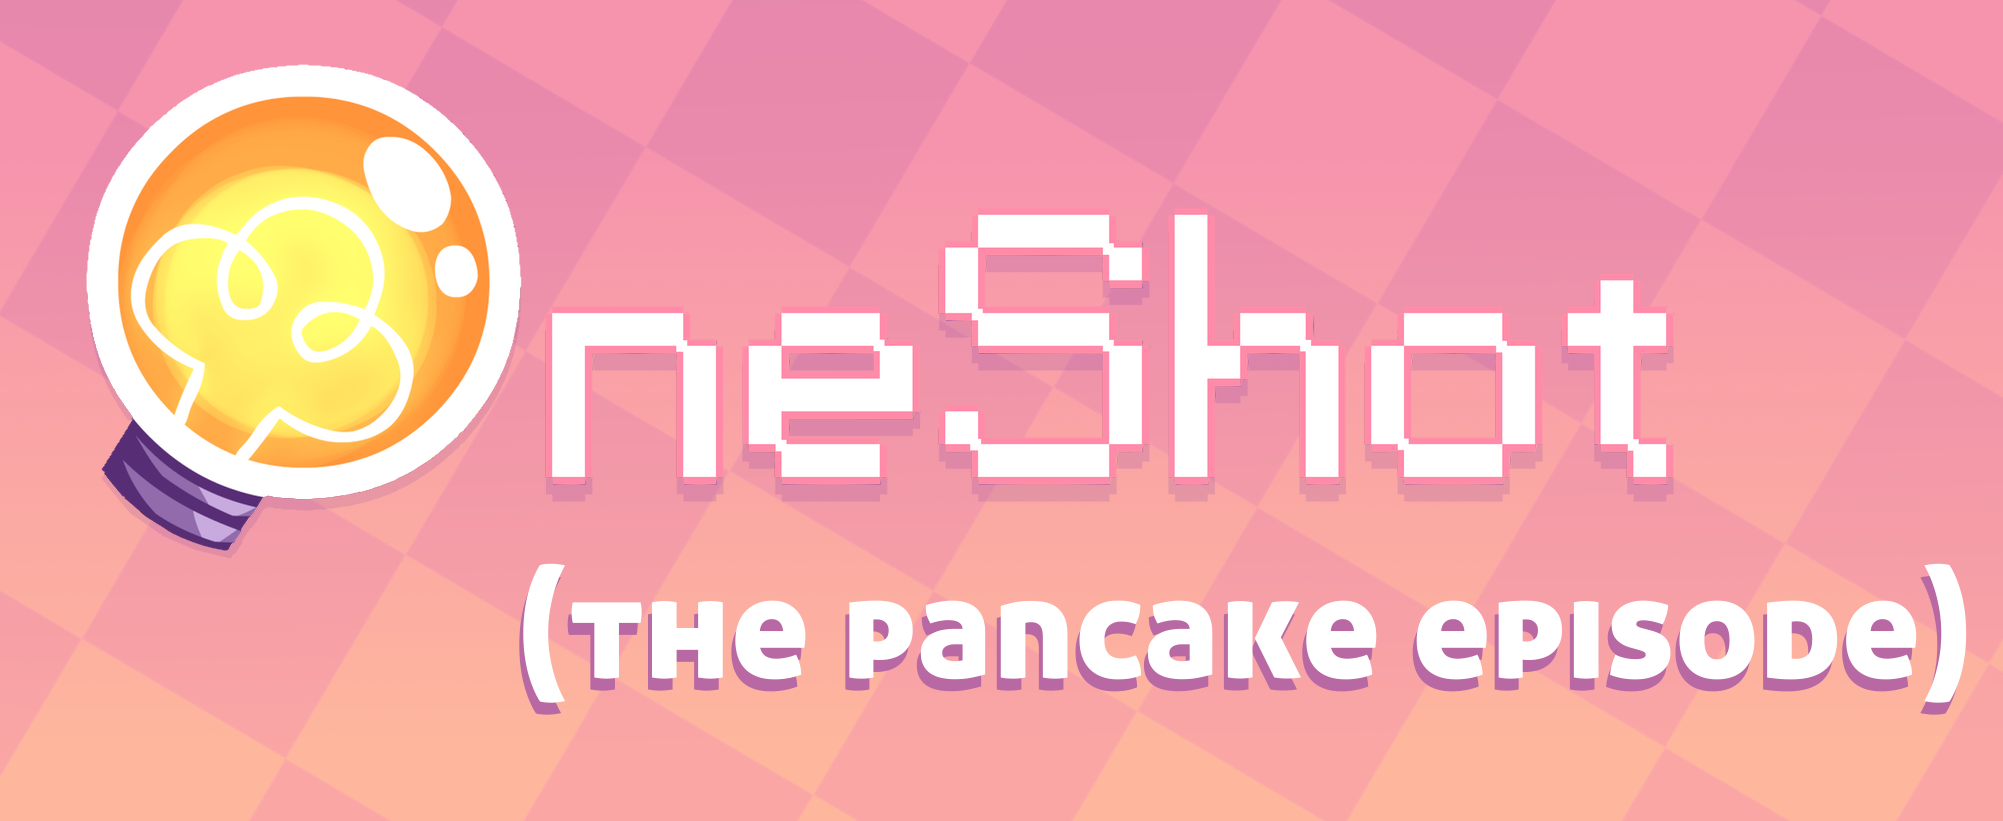 OneShot: the pancake episode